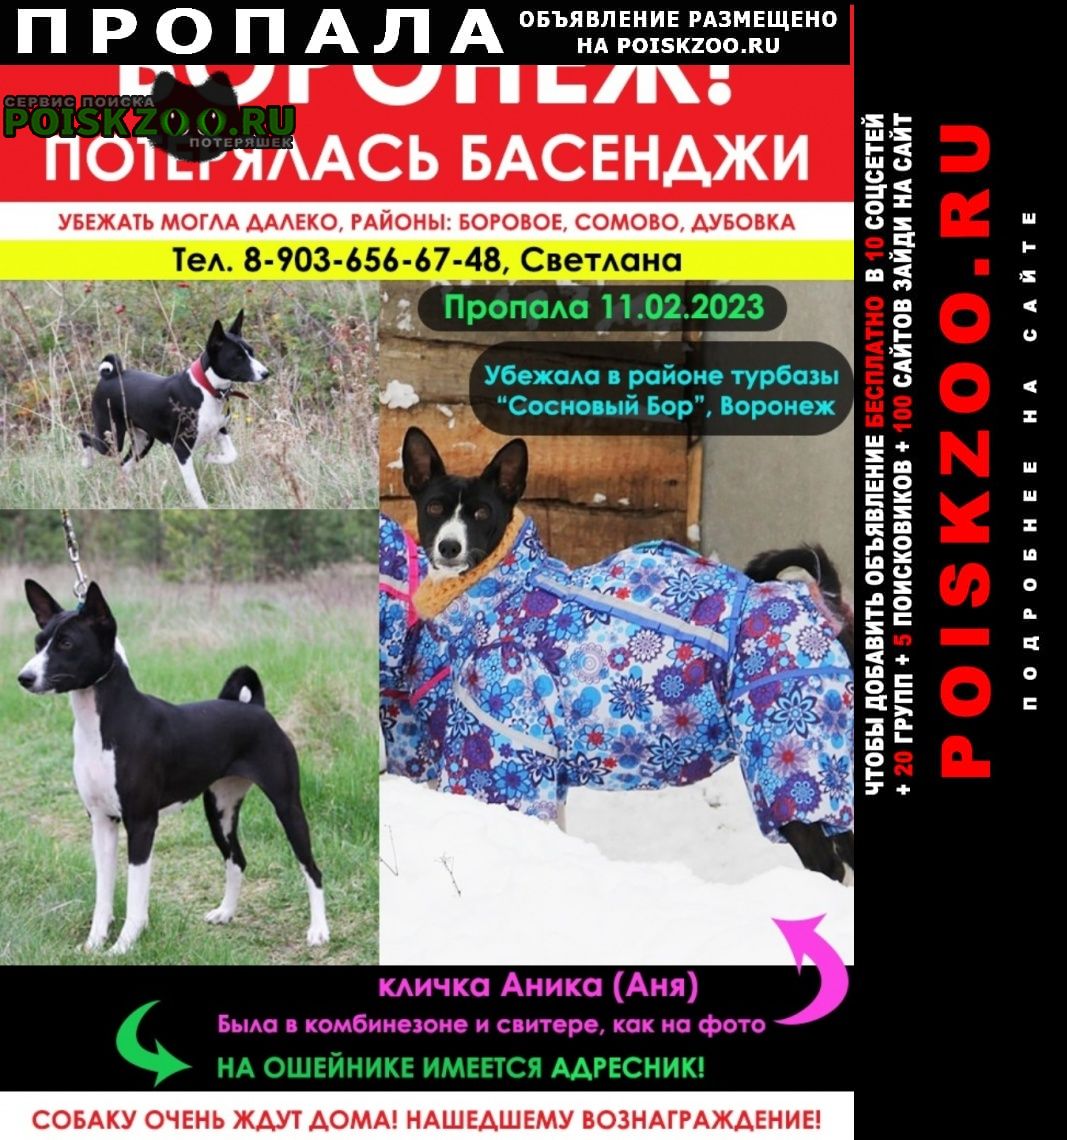 Воронеж Пропала собака басенджи в е, боровое